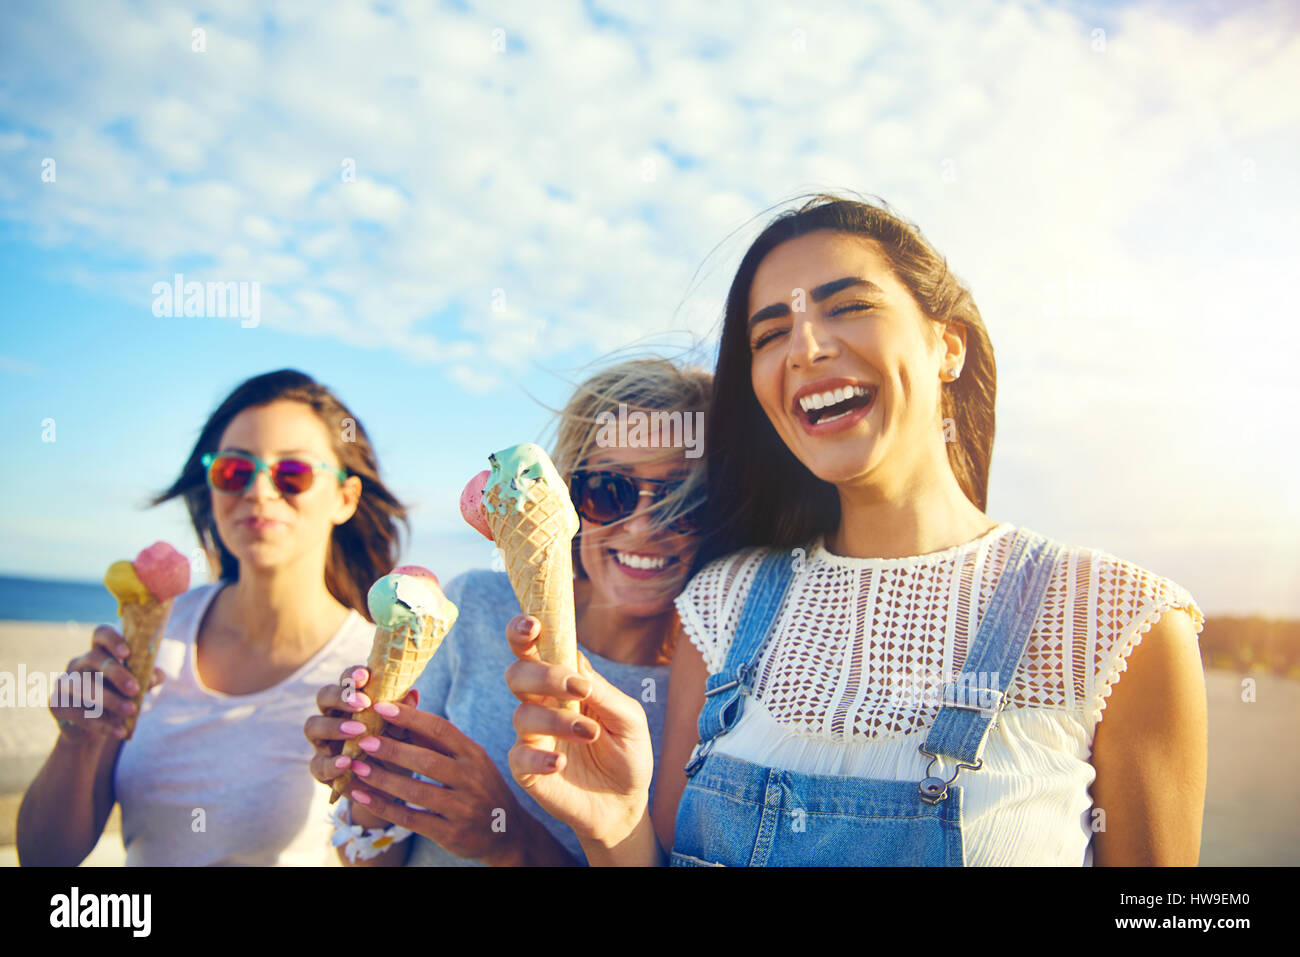 Glücklich temperamentvolle junge Studentinnen zu Fuß entlang einer Strandpromenade essen Eiscreme-Kegel, lachen und scherzen in der heißen Sommersonne Stockfoto